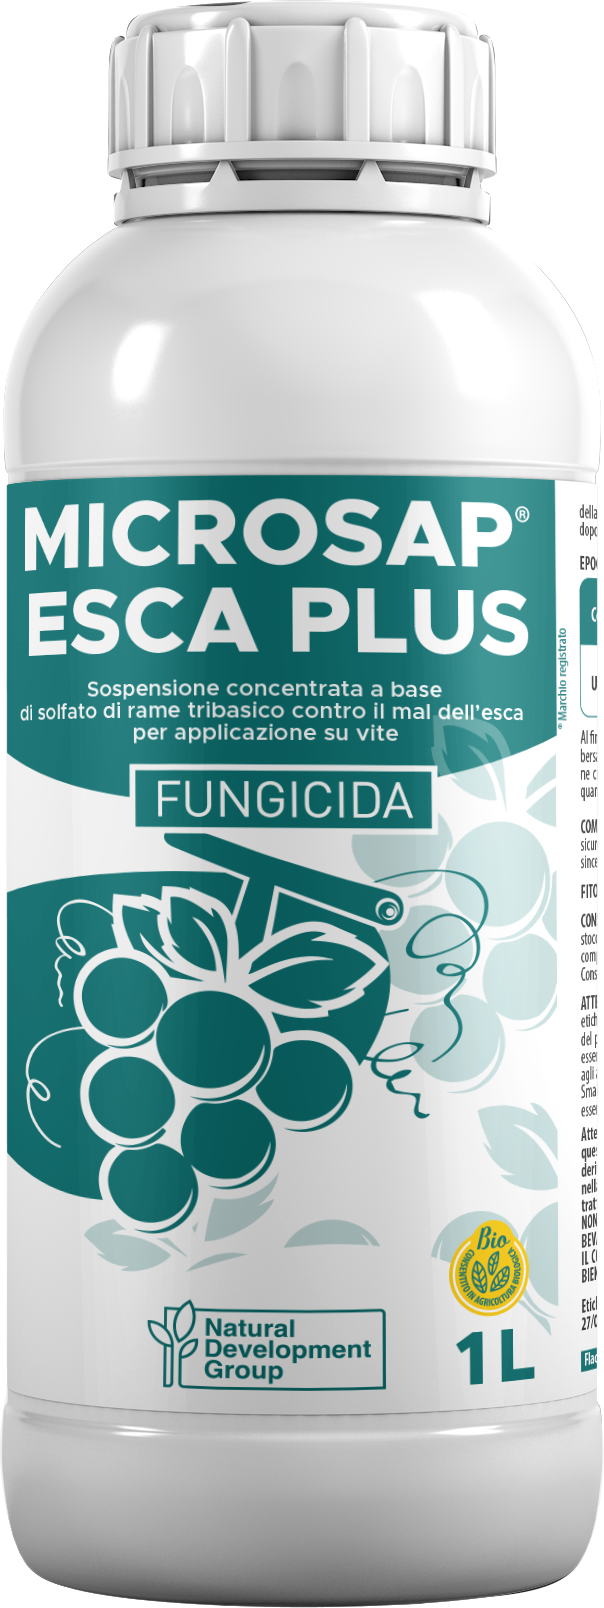 Microsap Esca Plus_1L (002)